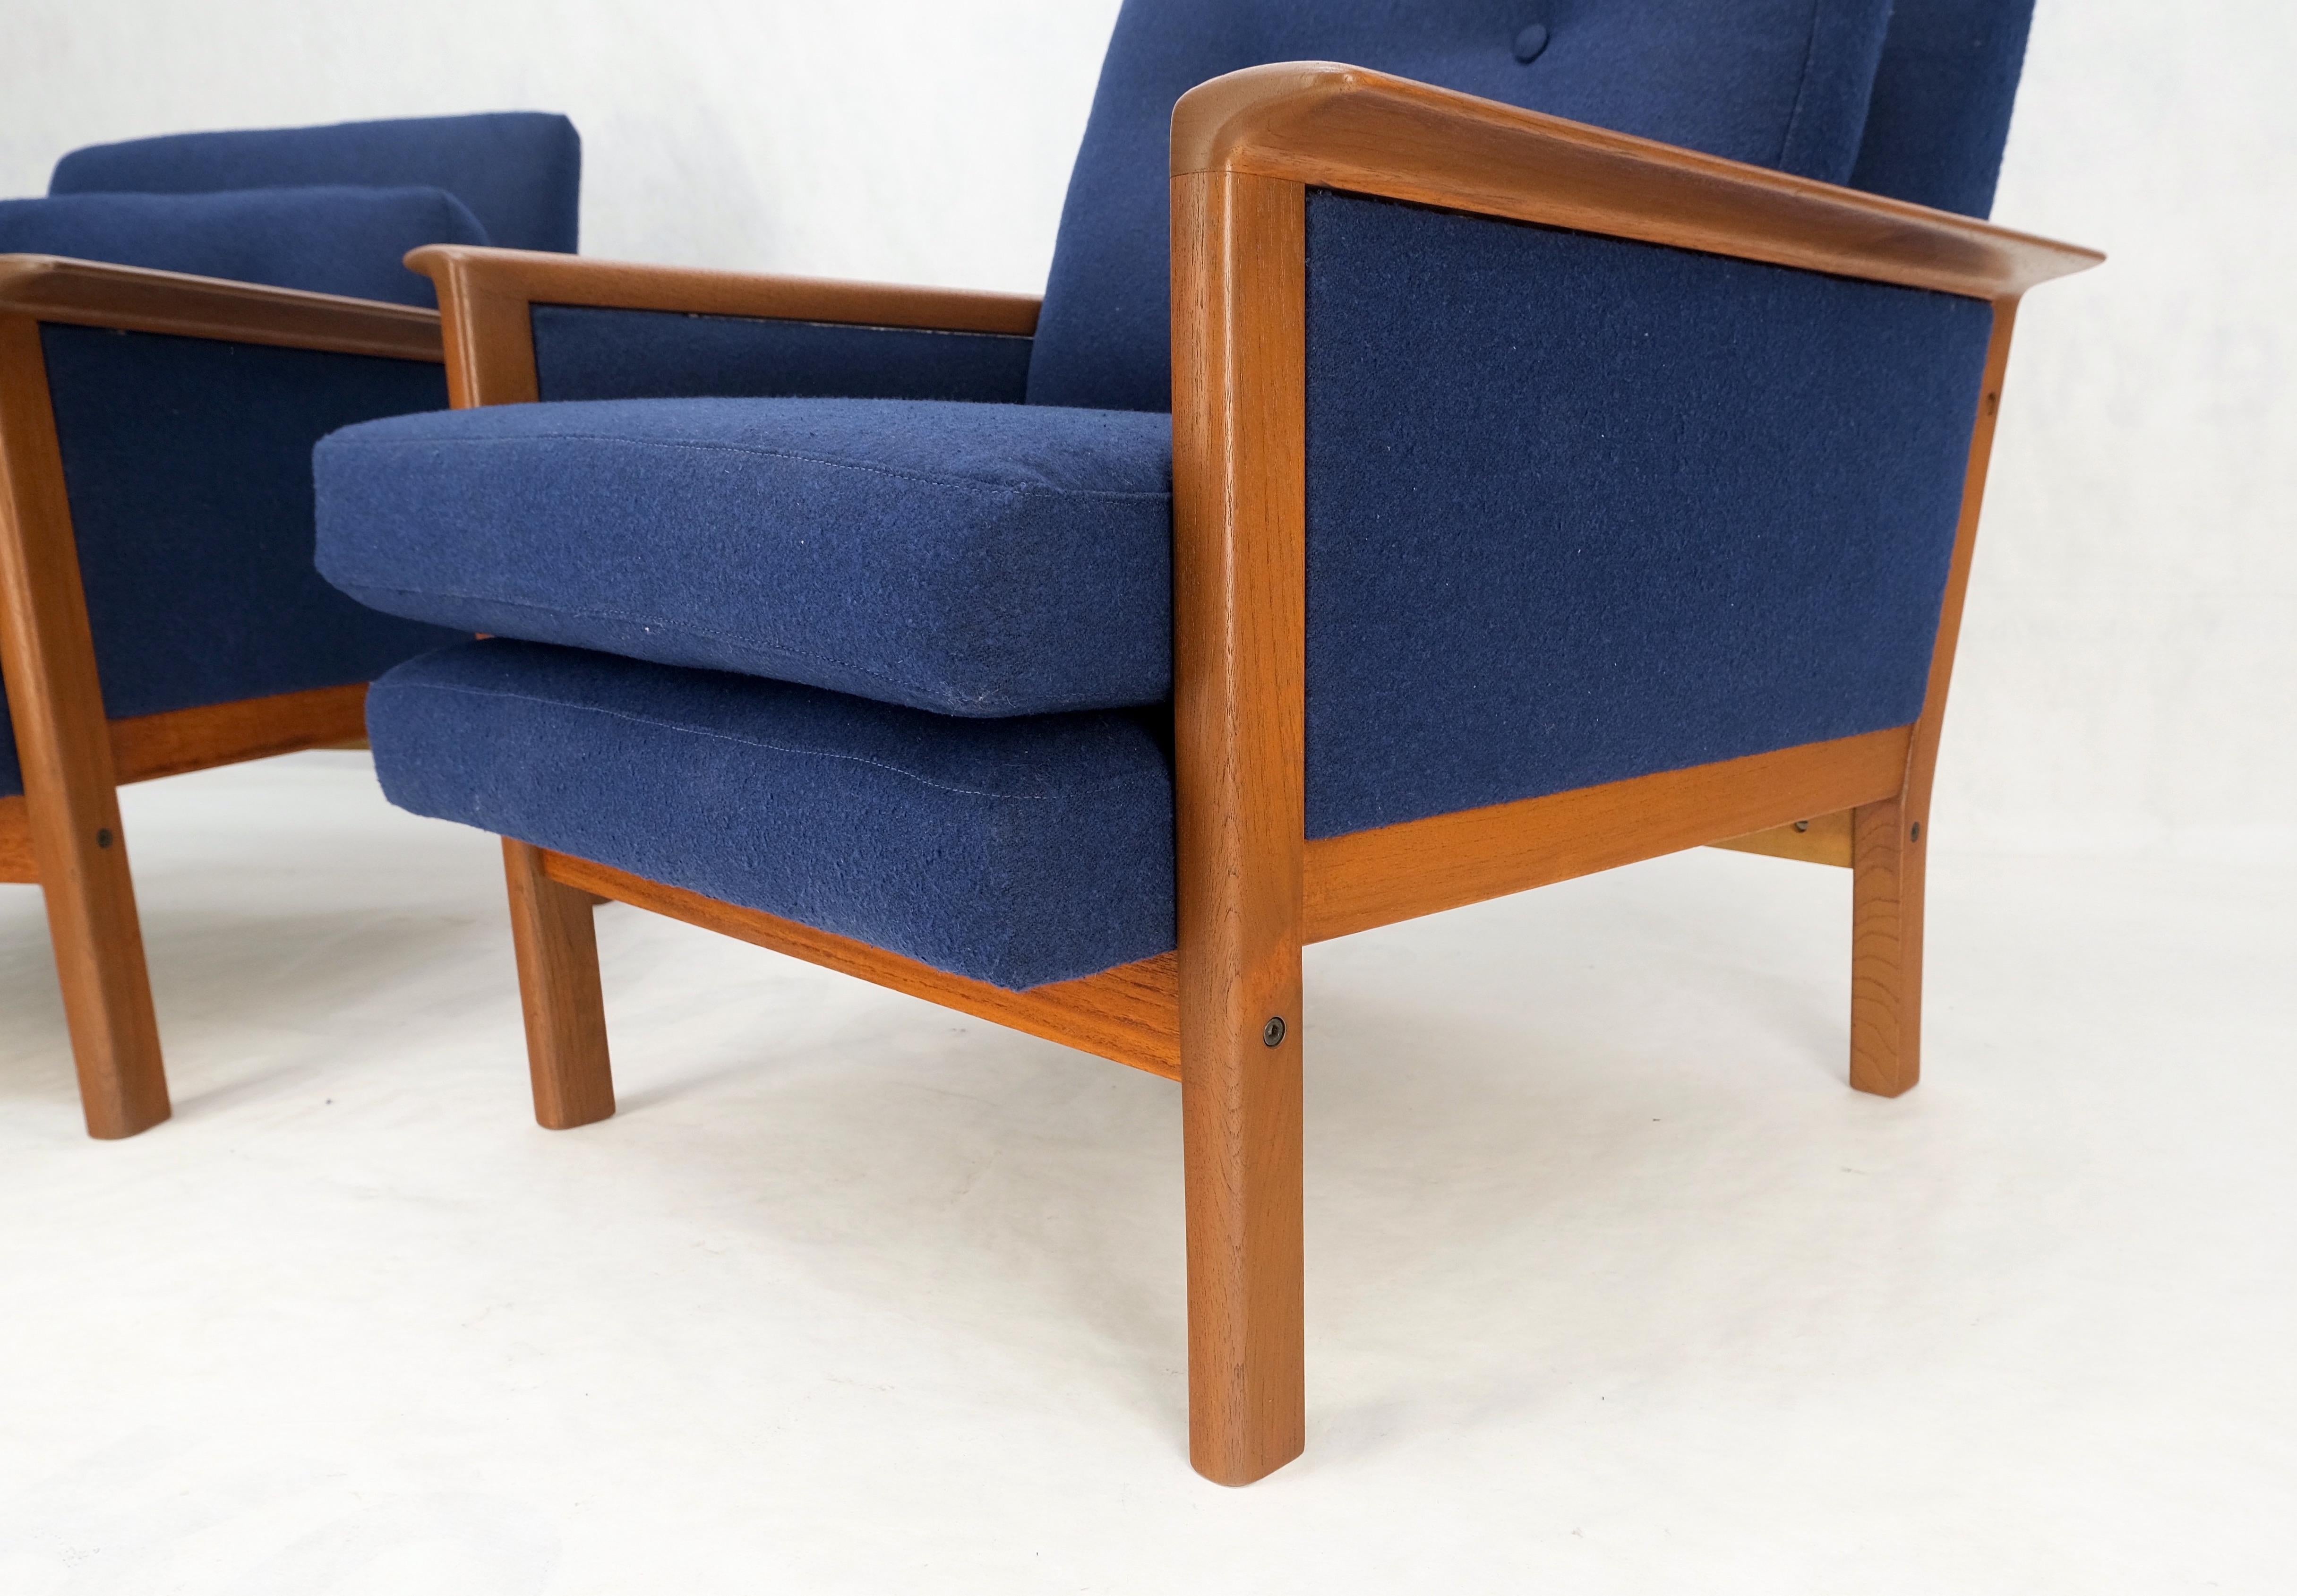 Paire de chaises longues en teck danois du milieu du siècle dernier, avec cadre en laine neuve, revernies, MINT !

Chaise plus haute : 30×28x37, hauteur d'assise : 16''
Chaise plus petite : 28x28x27.5, hauteur d'assise : 16''.